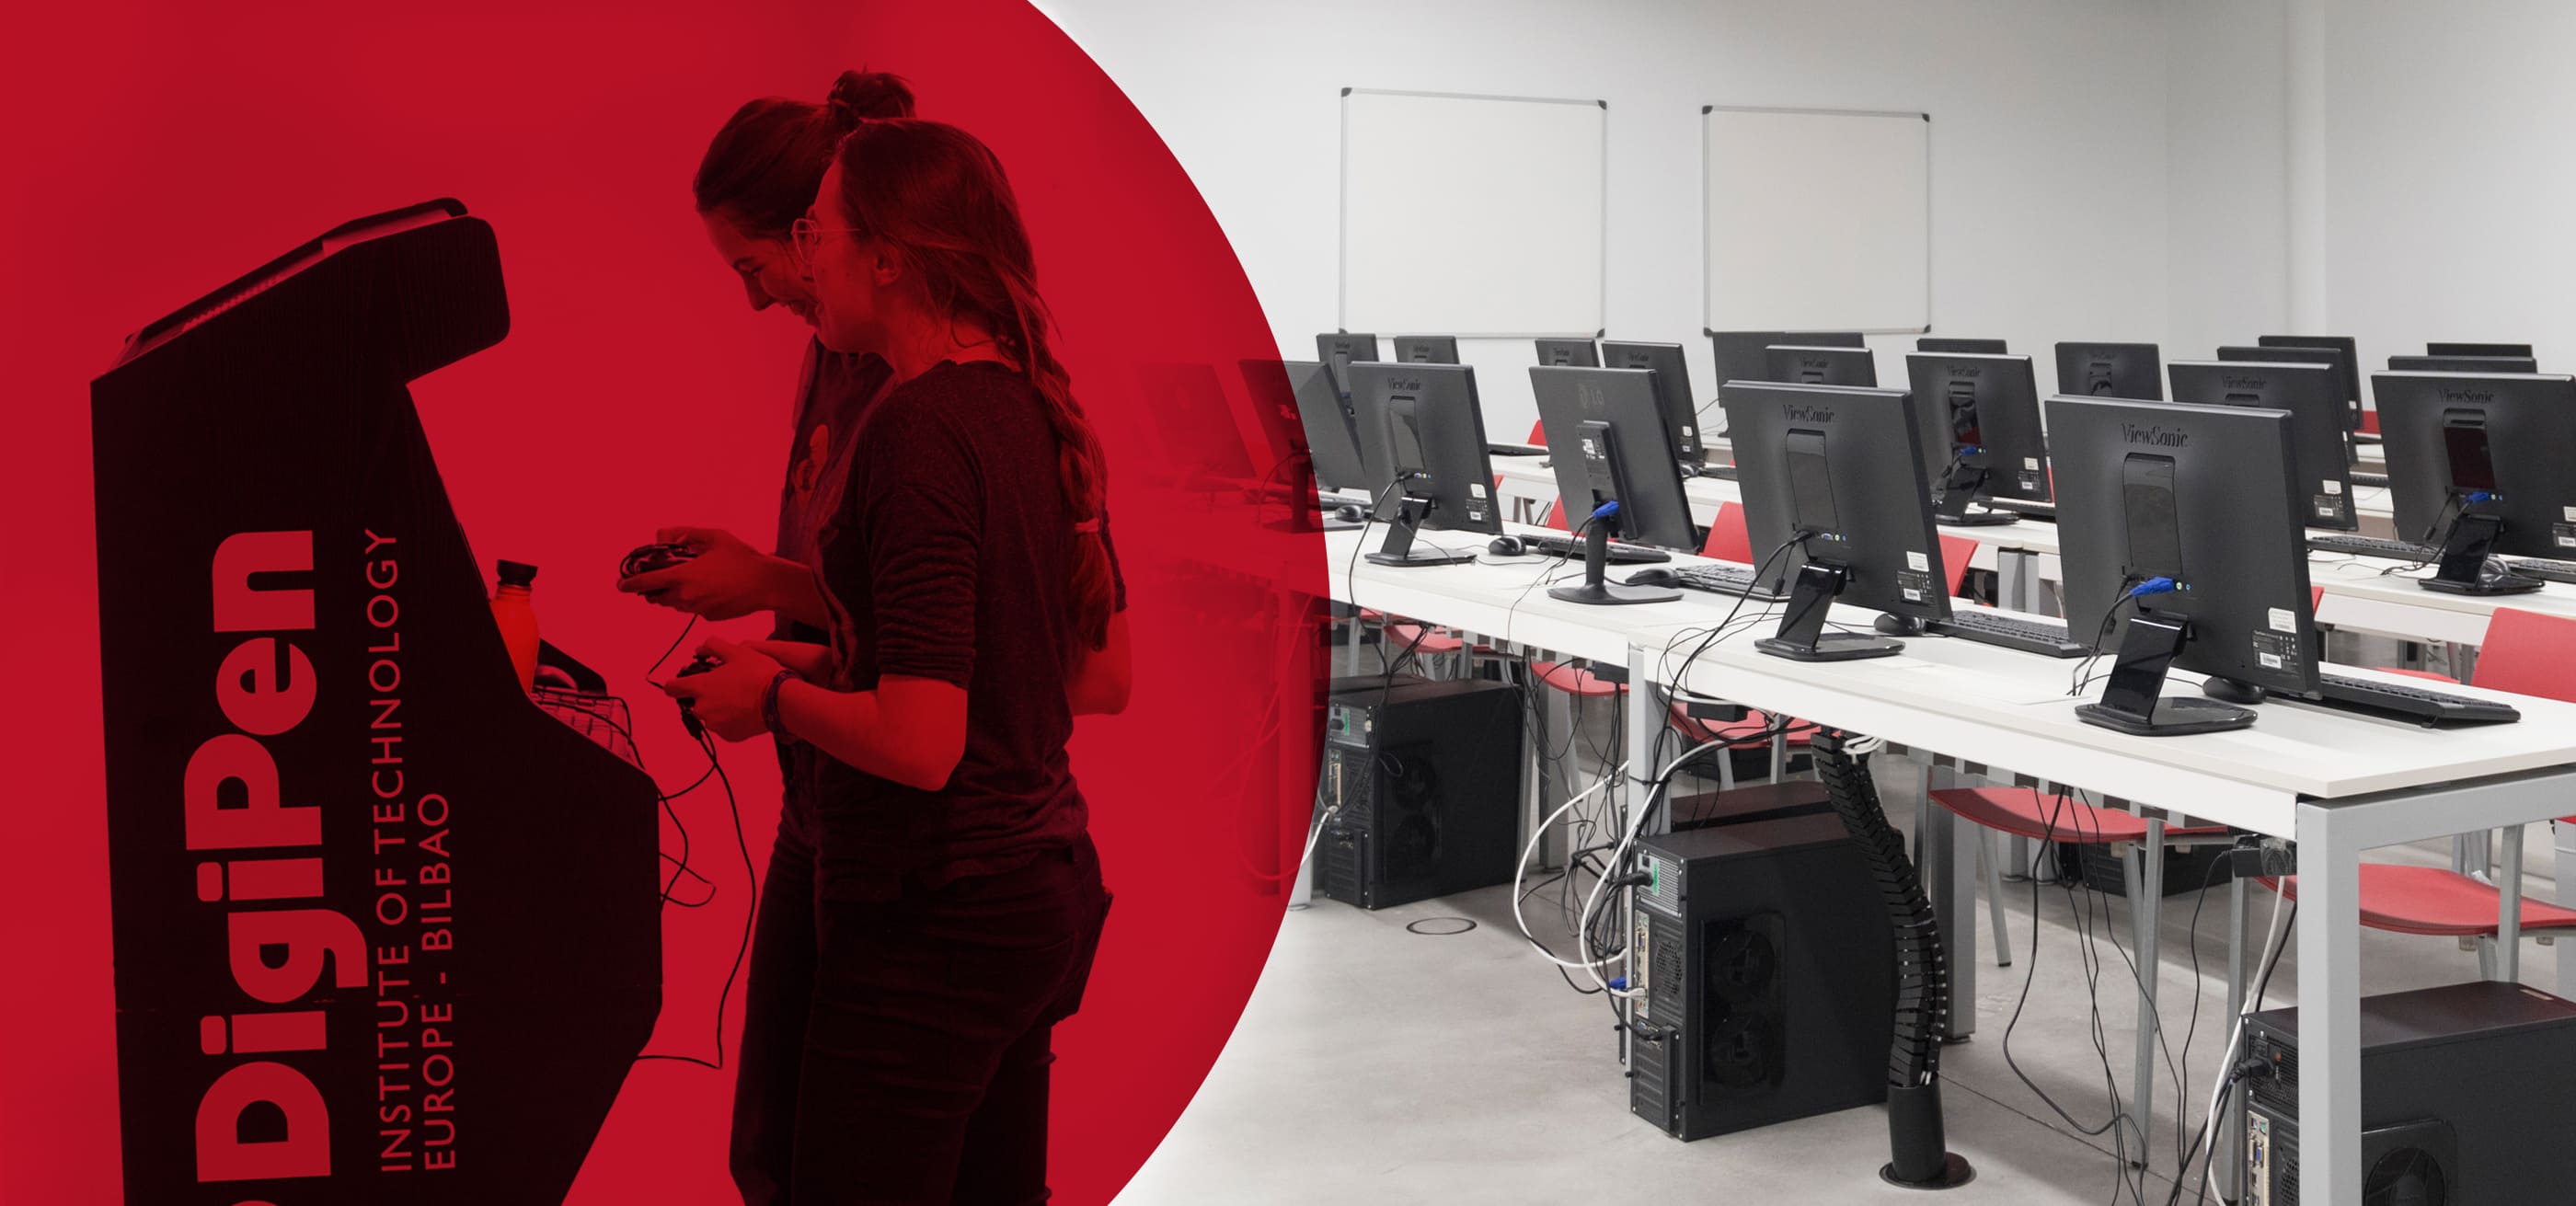 Dos alumnas jugando Arcade bajo un fondo rojo y las instalaciones de un aula de ordenadores de DigiPen Europe Bilbao.